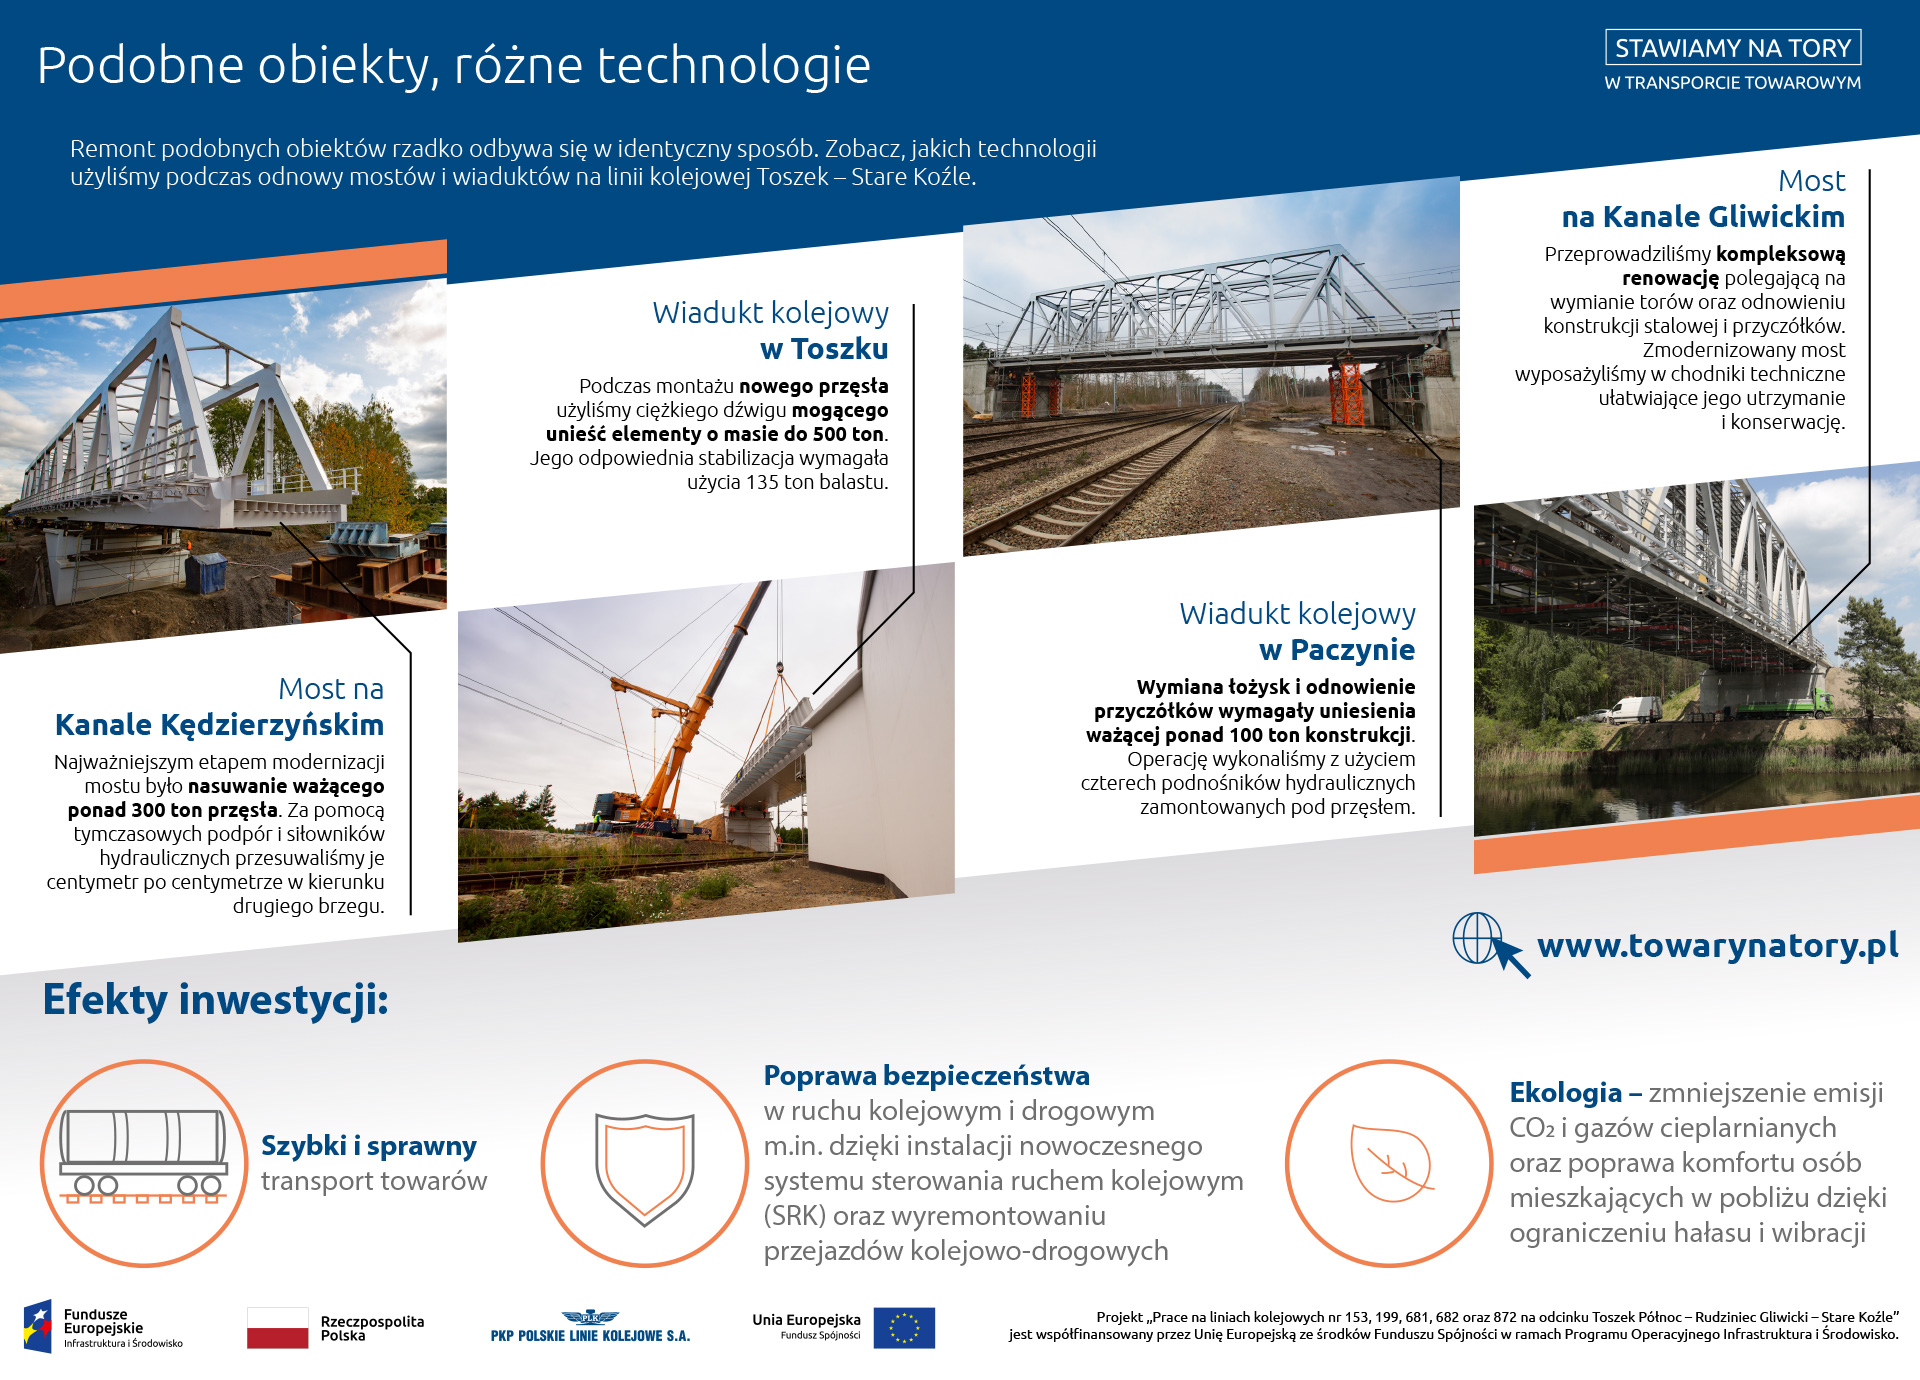 Infografika: pokazuje różnice i podobieństwa na wyremontowanych obiektach. Są to: most na Kanale Kędzierzyńskim, wiadukt kolejowy w Toszku, wiadukt kolejowy w Paczynie i most na Kanale Gliwickim.